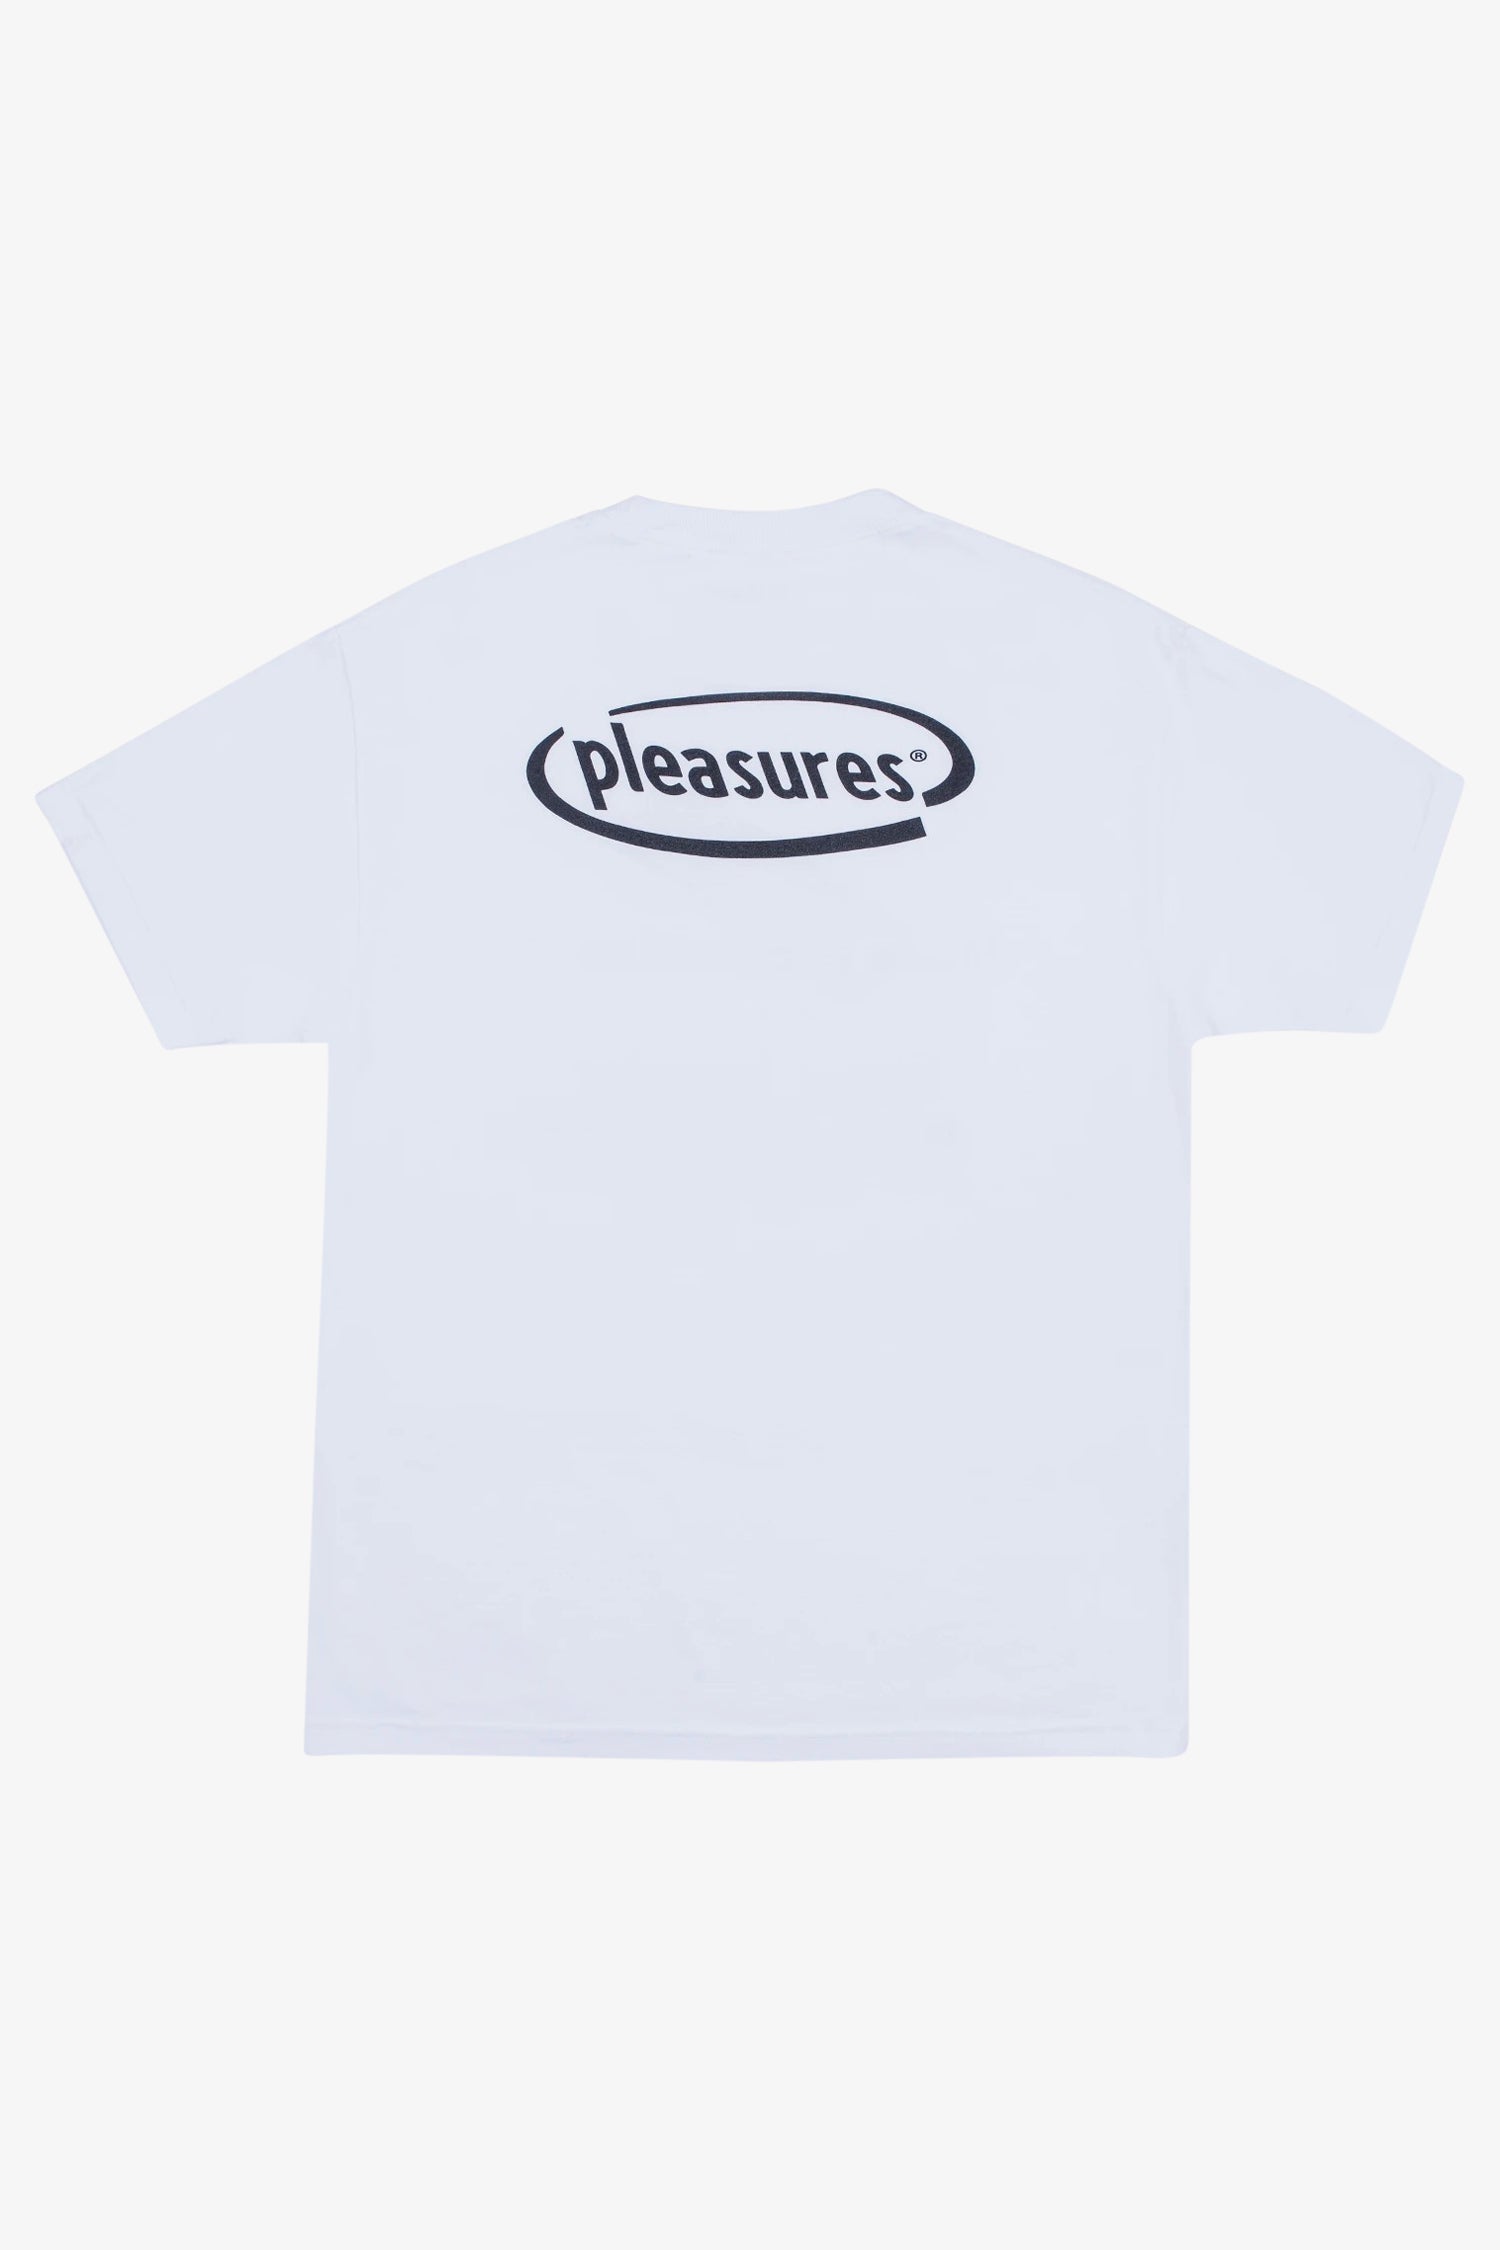 Selectshop FRAME - PLEASURES Happier T-Shirt T-Shirt Dubai